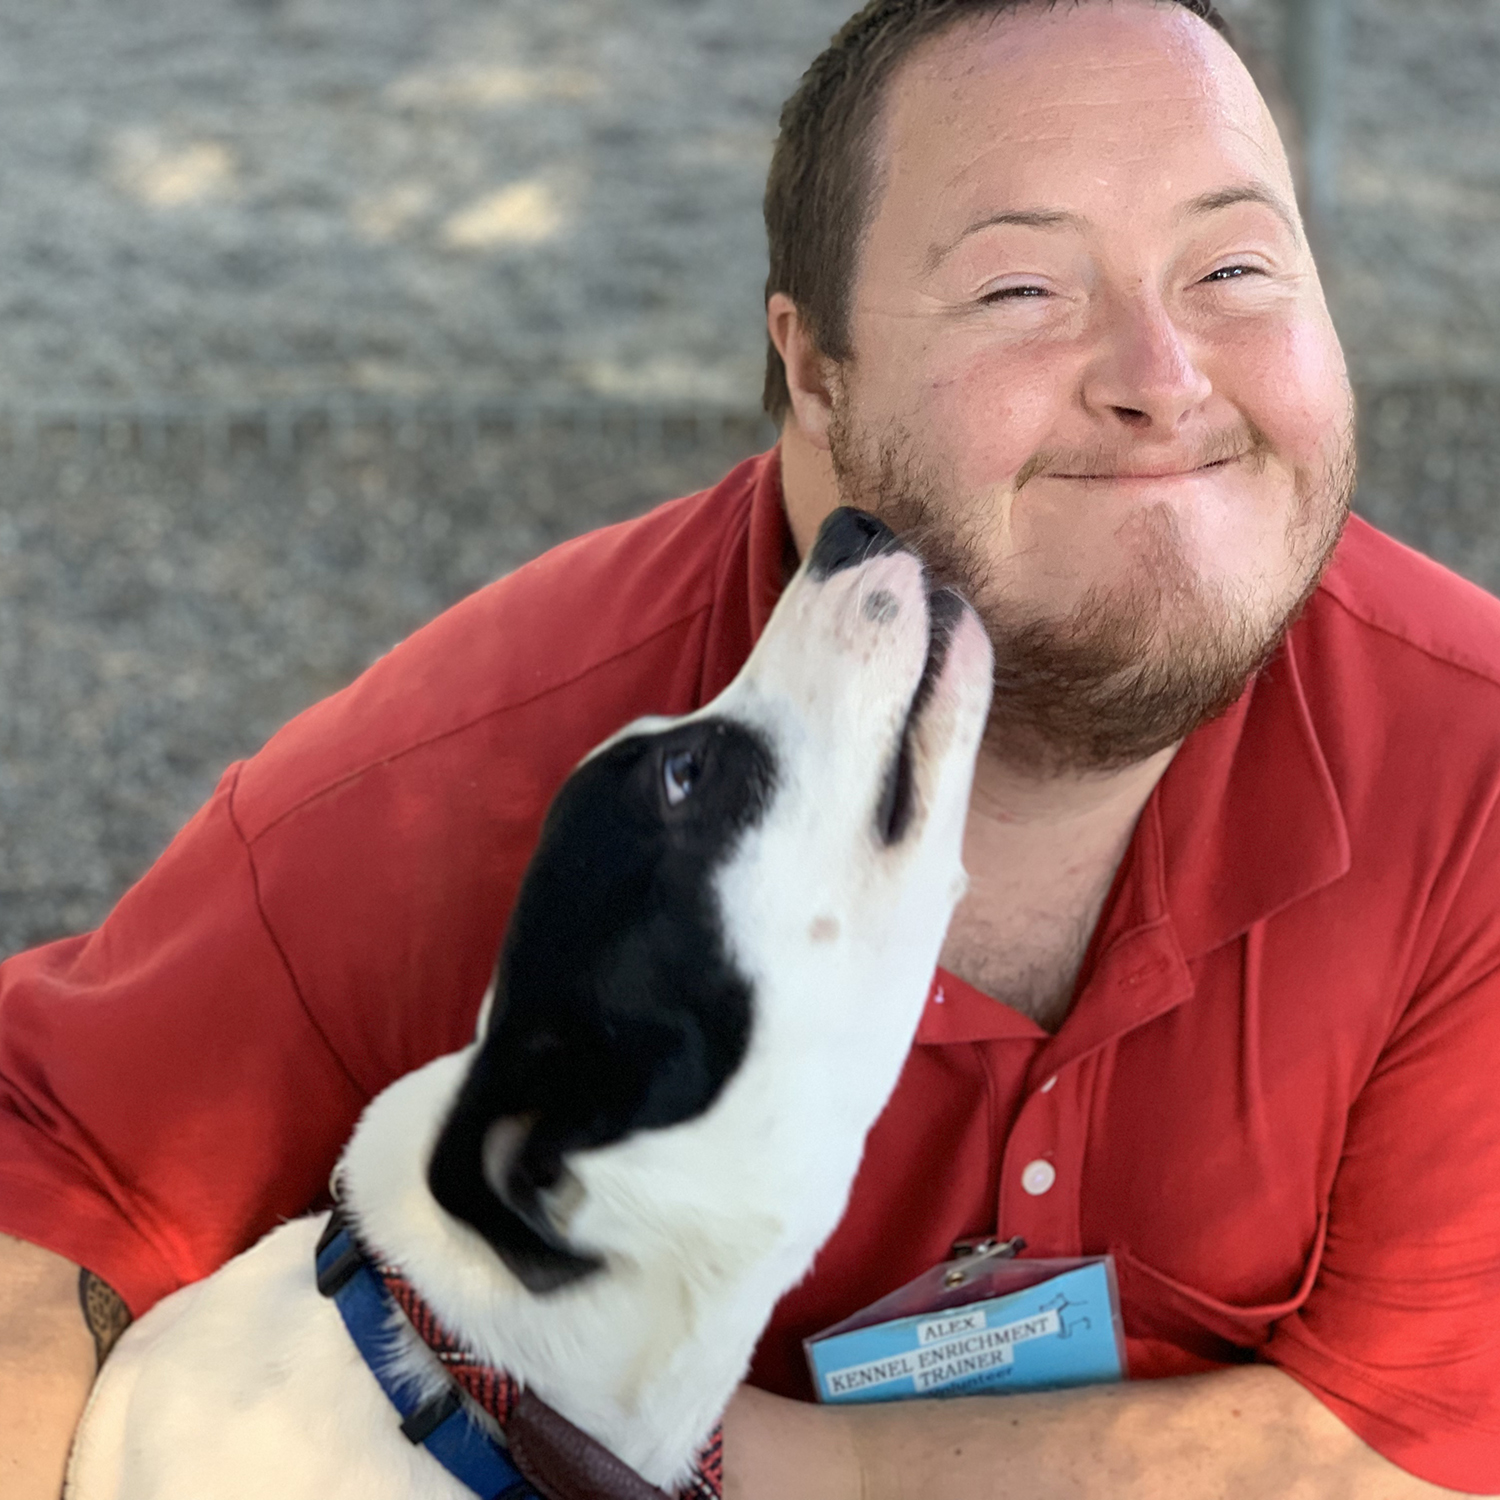 A young man smiles as a dog licks his face